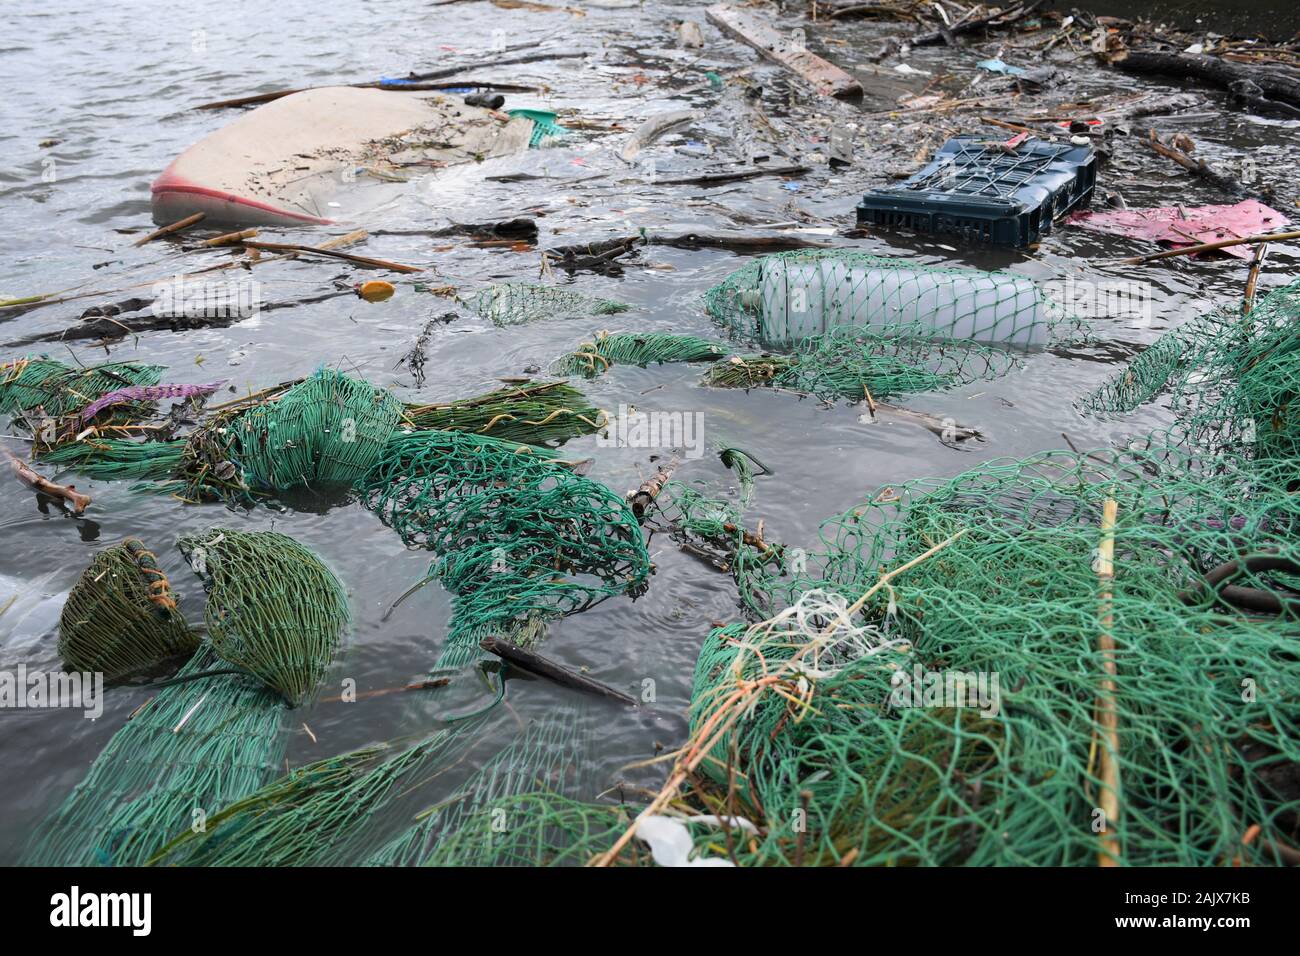 Hãy khám phá hình ảnh liên quan đến ô nhiễm mạng lưới đánh bắt cá và cùng nhau tìm hiểu những cách giải quyết để bảo vệ nguồn tài nguyên biển đang bị đe dọa! Bạn sẽ ấn tượng với mức độ nghiêm trọng của vấn đề và đồng thời nhận thức được rằng, việc bảo vệ môi trường là trách nhiệm của mỗi người chúng ta. 